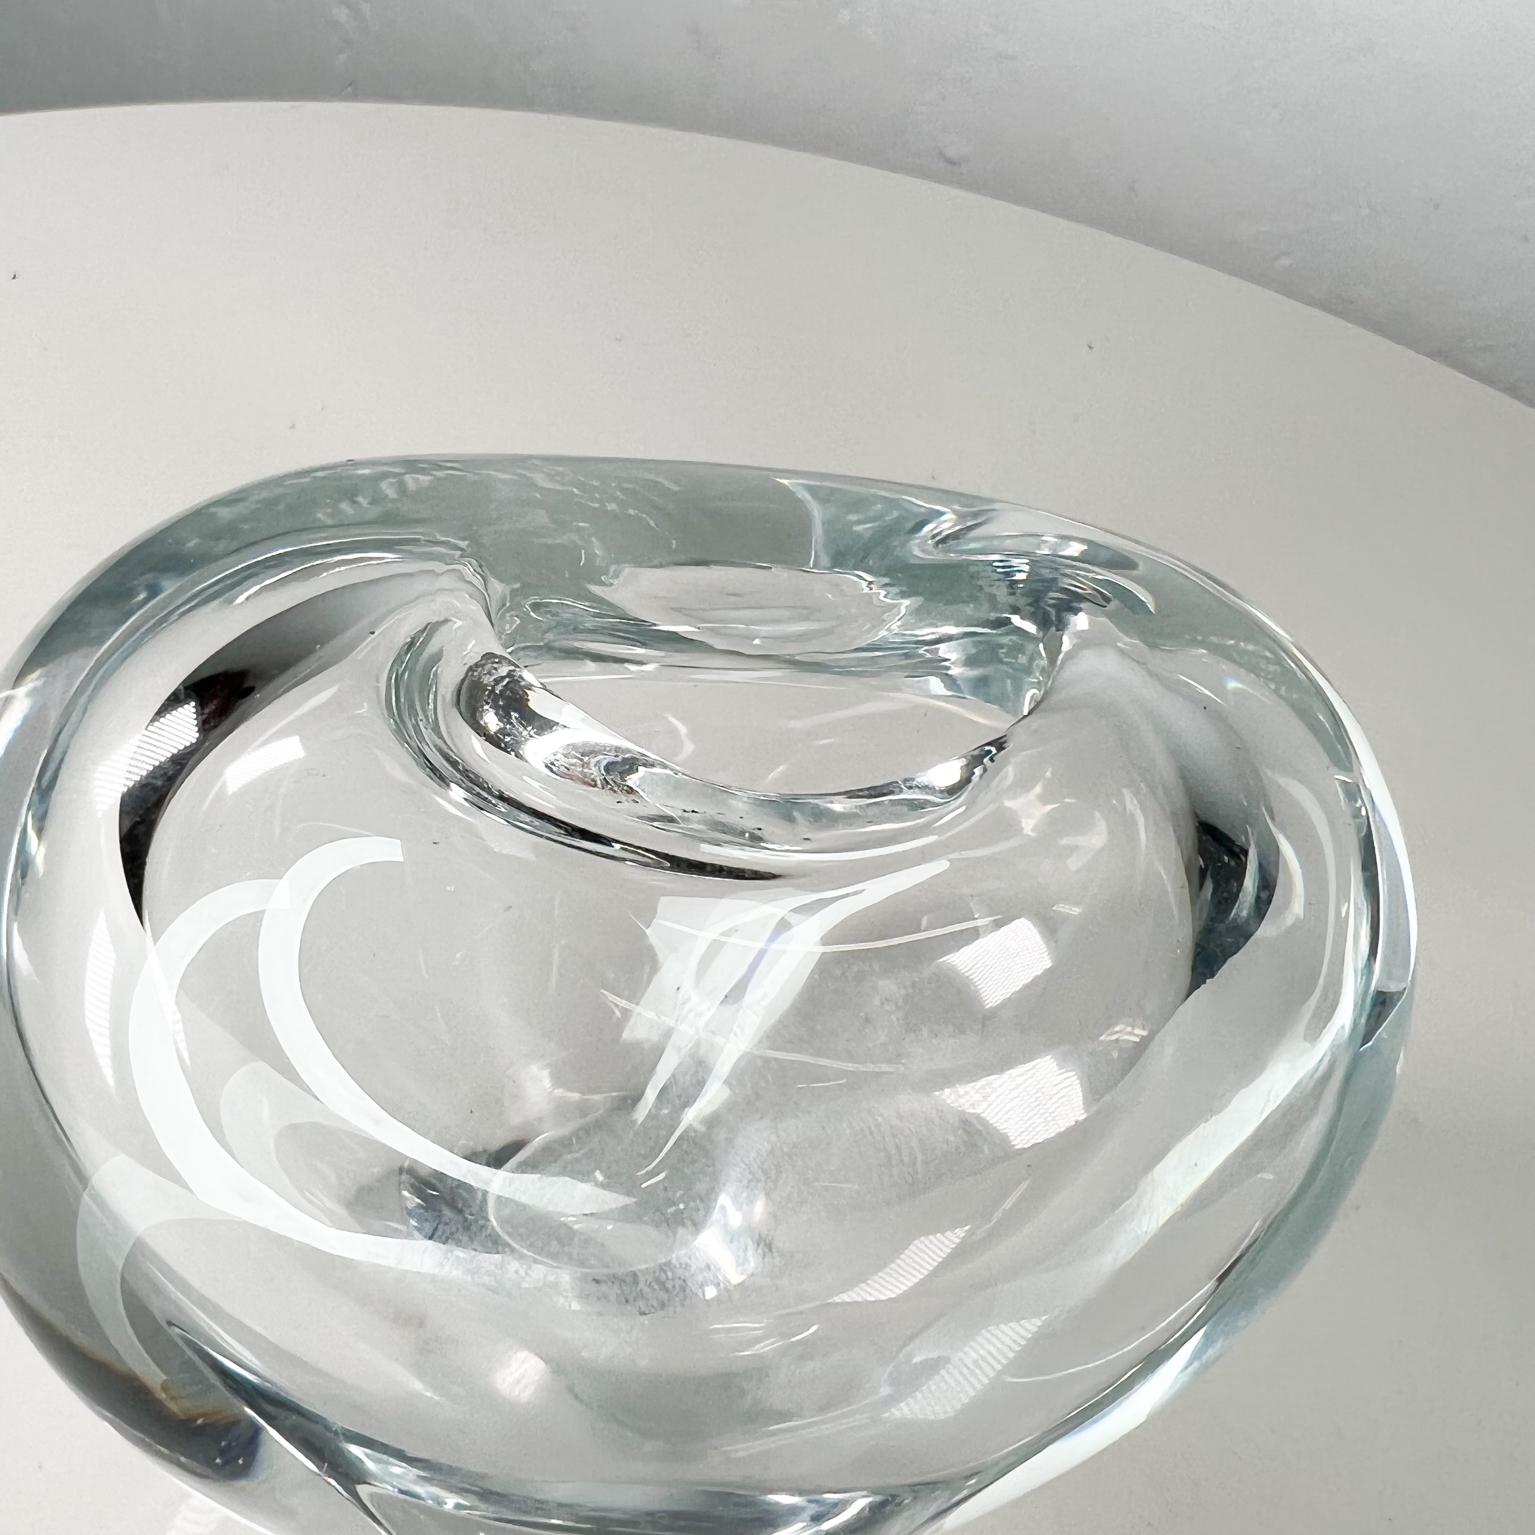 1960s Tiffany & Co Modern Heart Vase Murano Venetian Art Glass by Salviati Italy 1